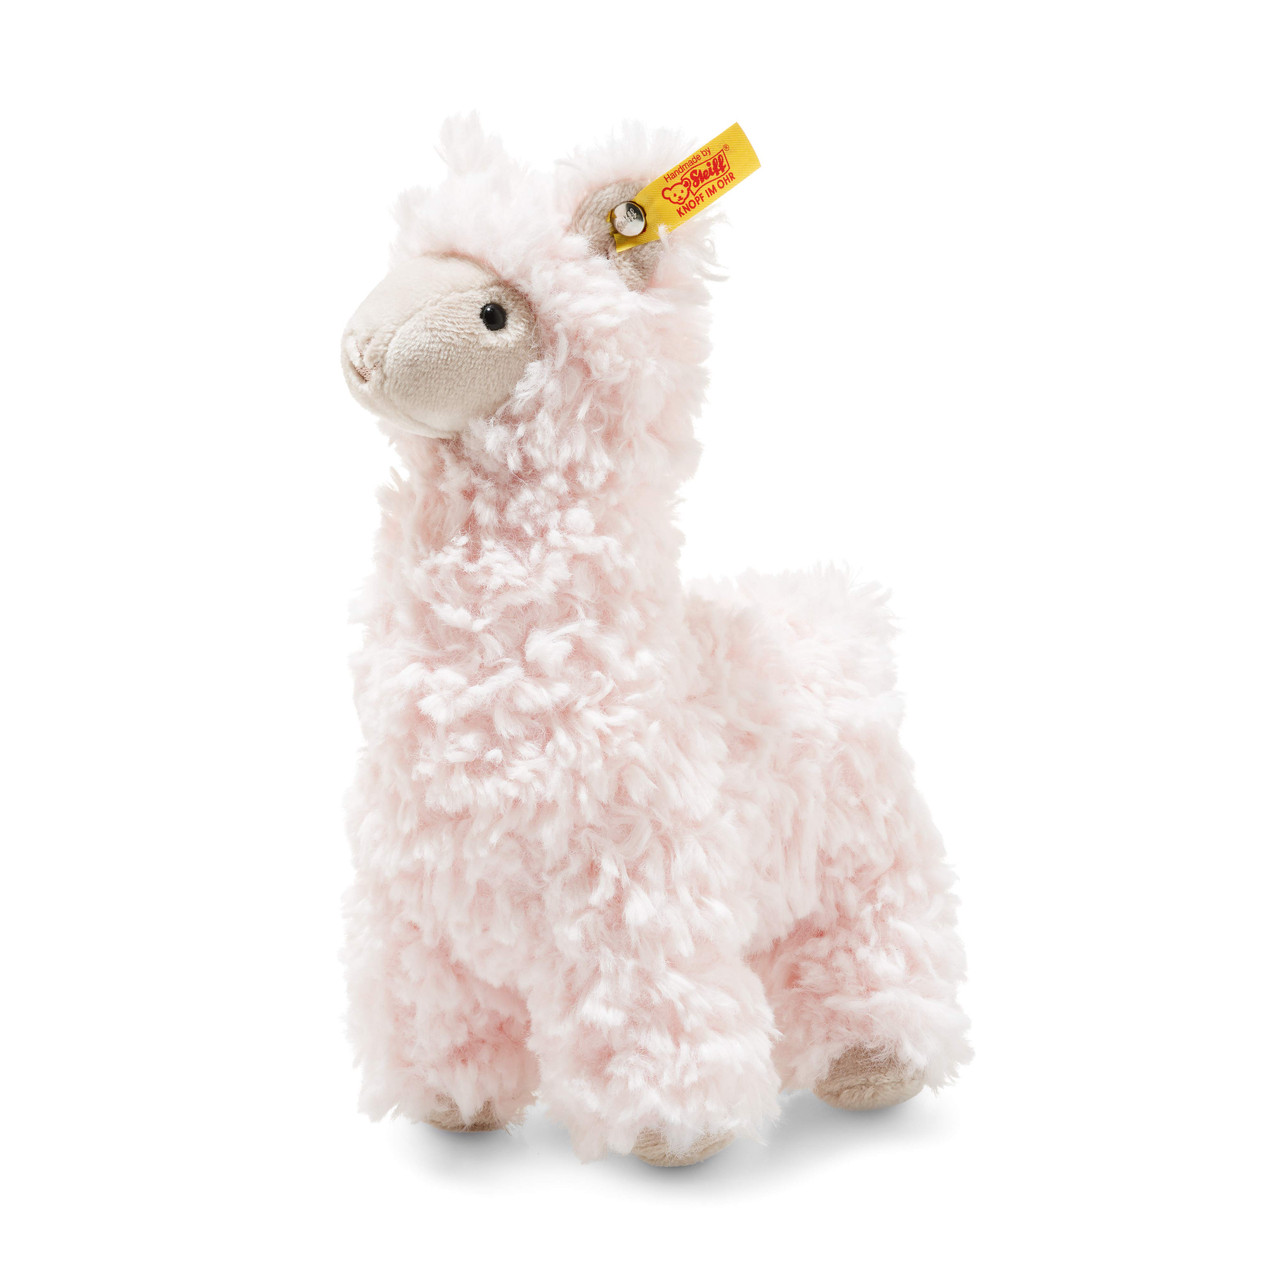 pink llama teddy